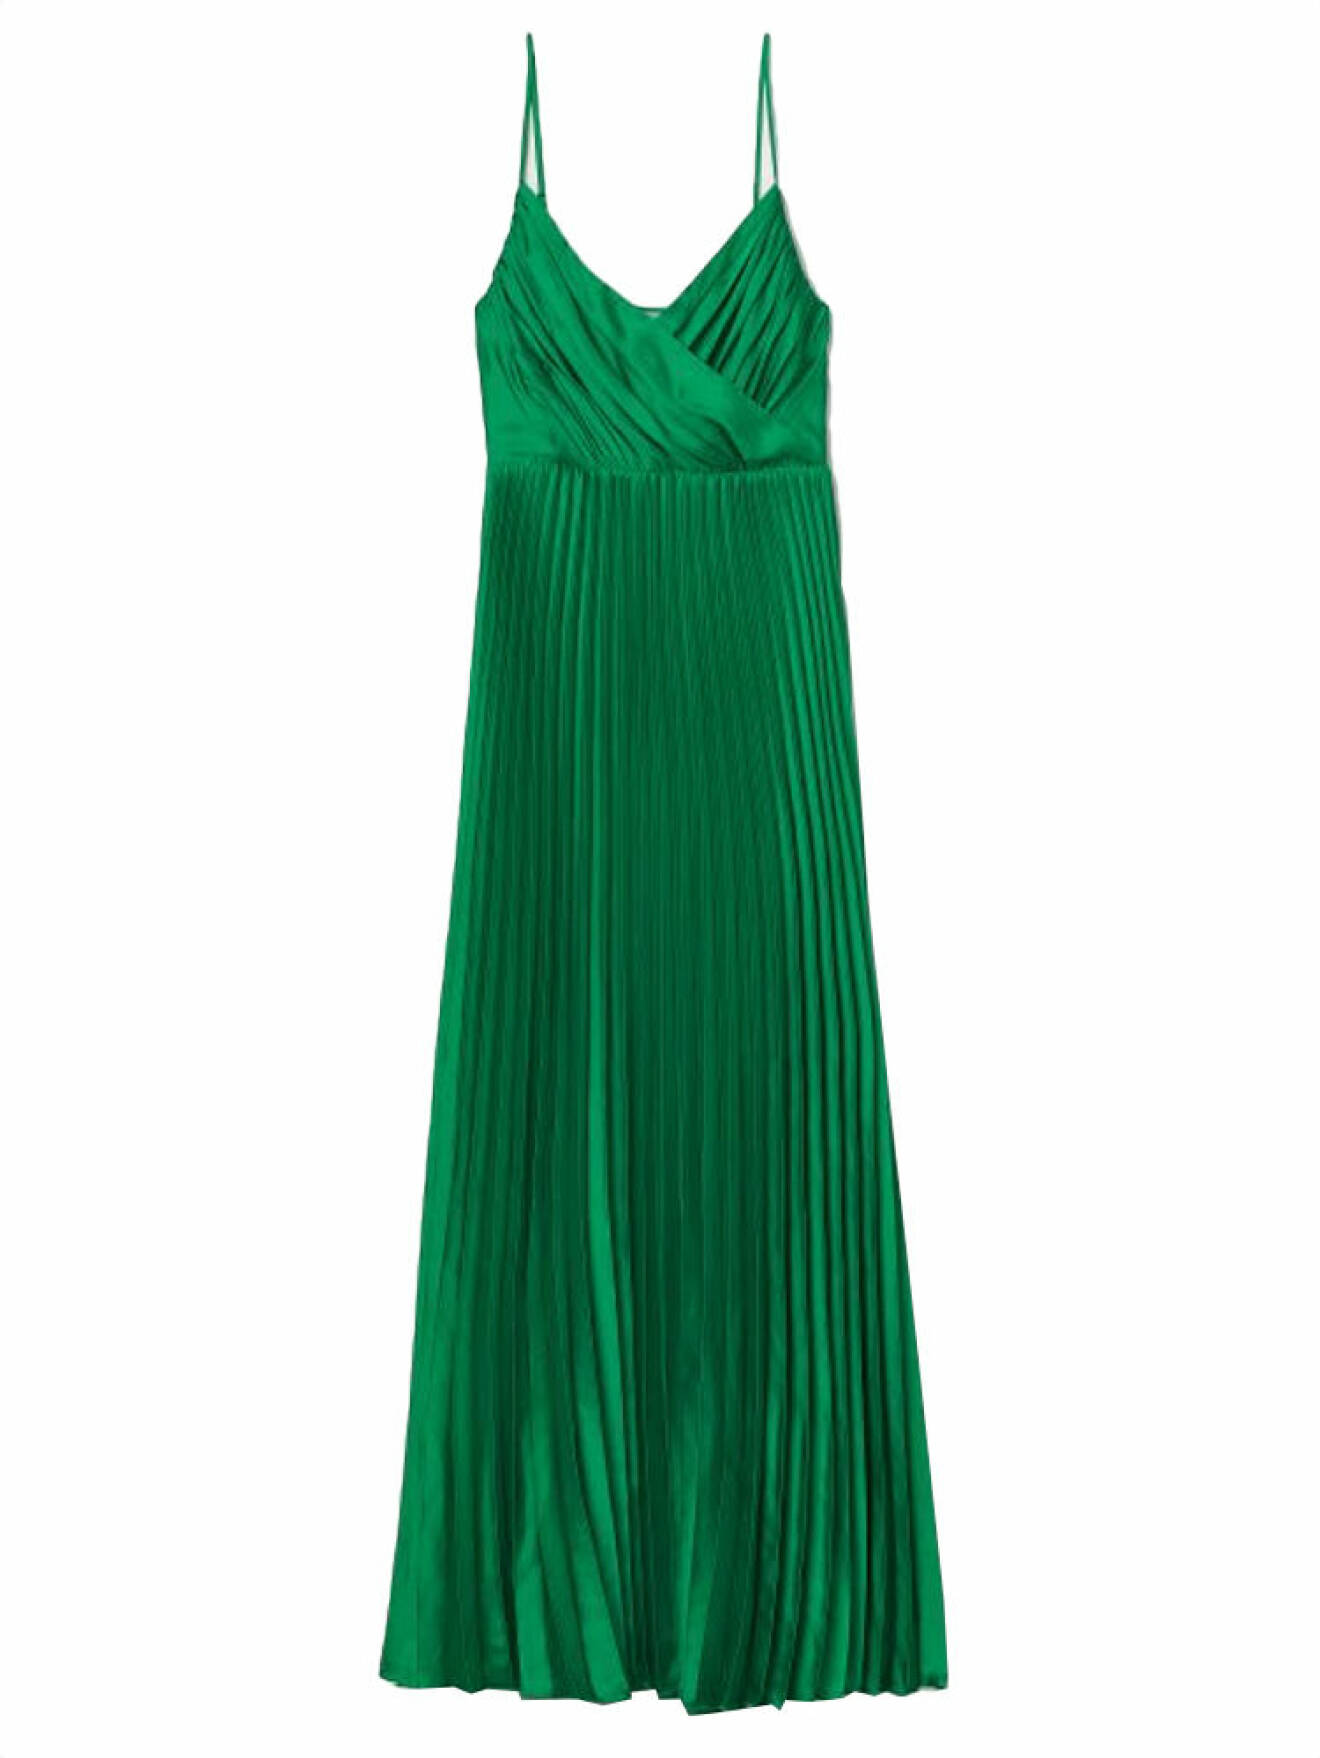 Grön klänning i plisserat material